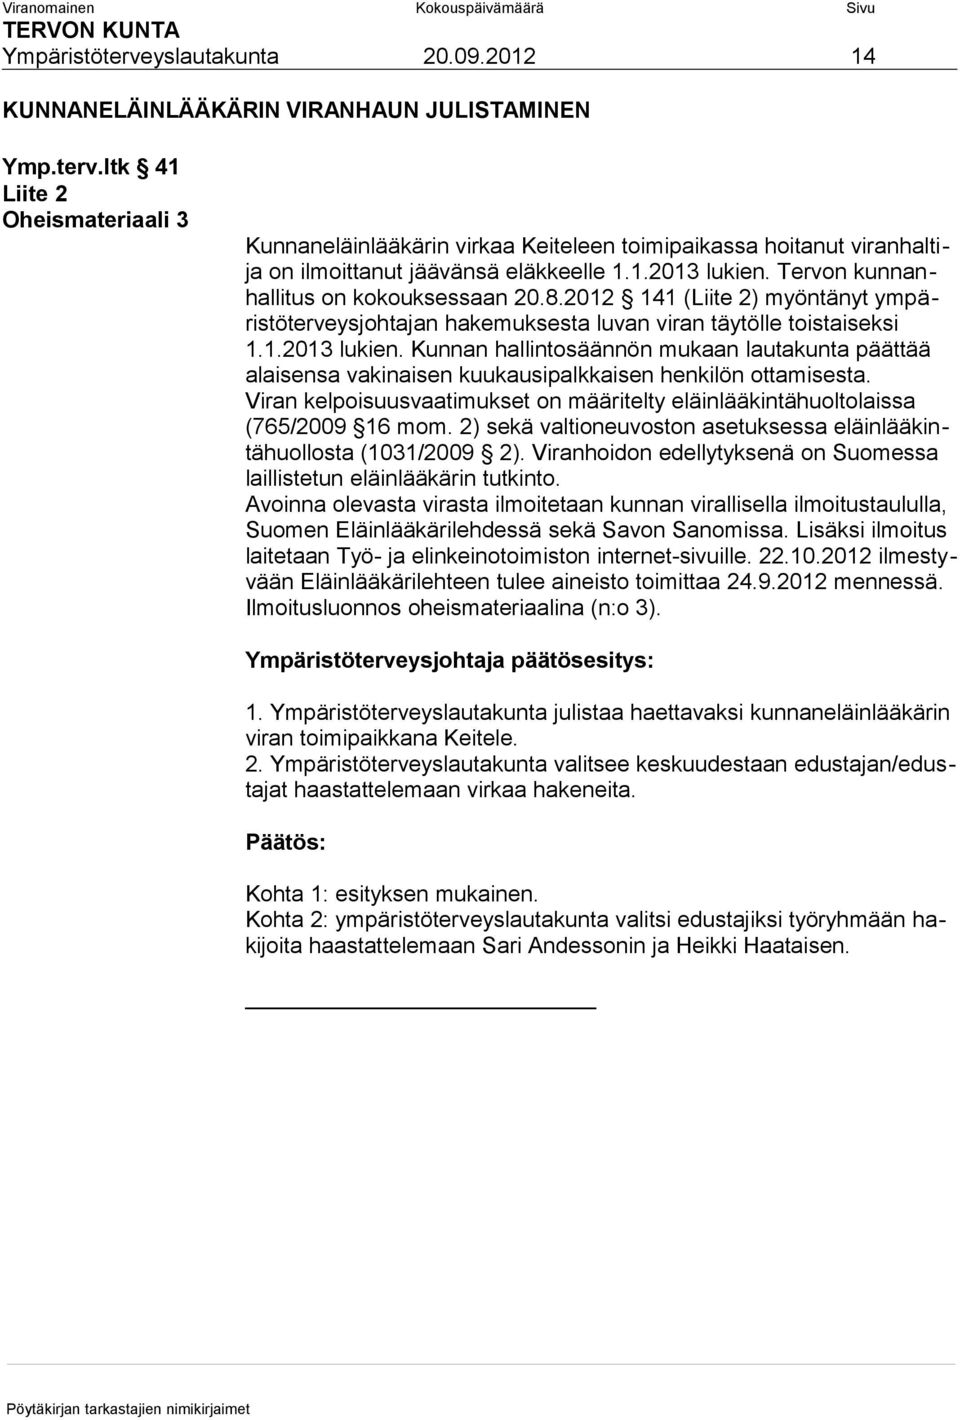 Viran kelpoisuusvaatimukset on määritelty eläinlääkintähuoltolaissa (765/2009 16 mom. 2) sekä valtioneuvoston asetuksessa eläinlääkintähuollosta (1031/2009 2).